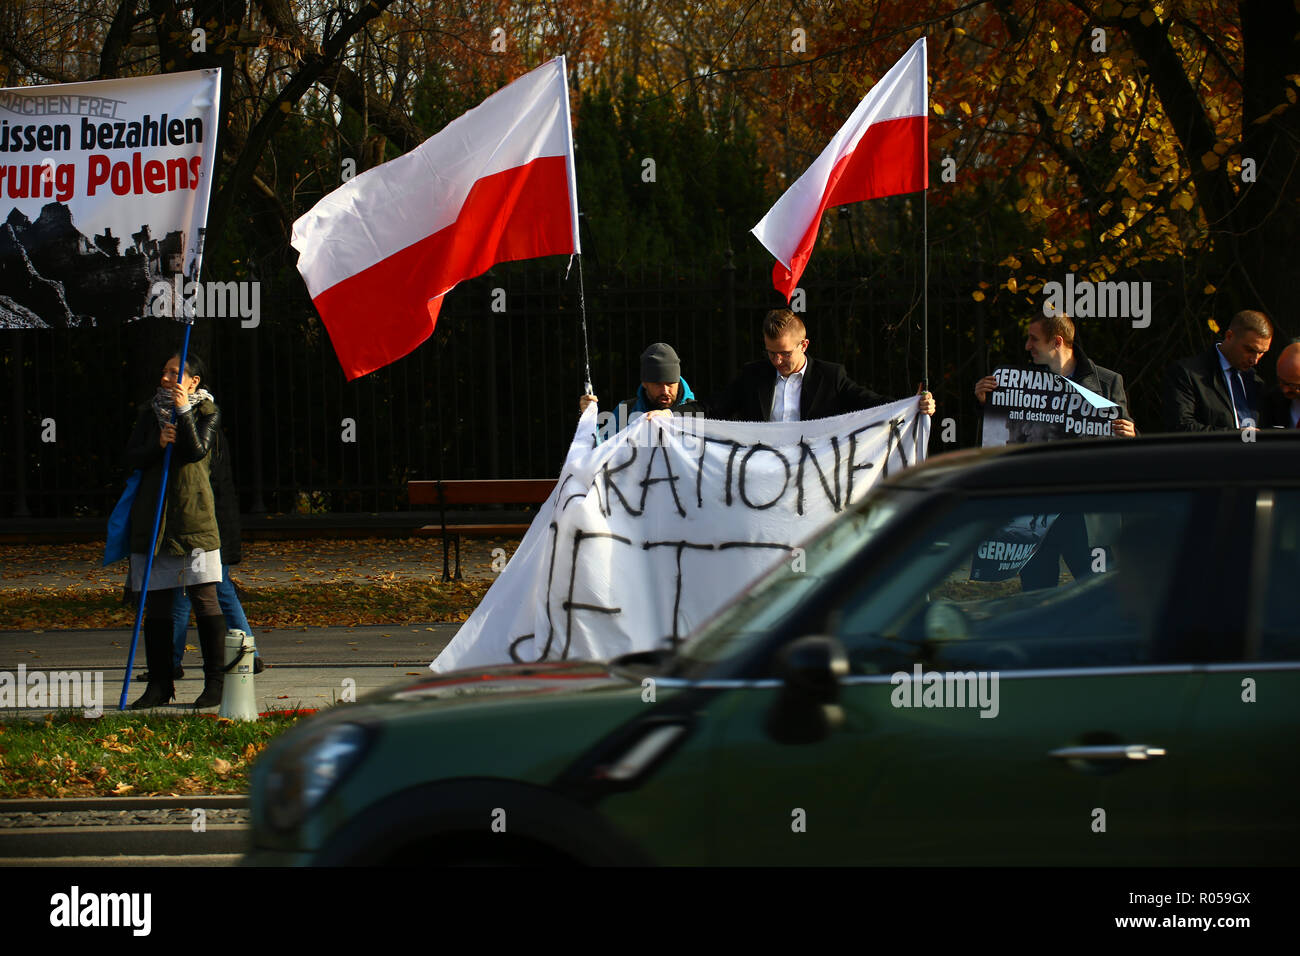 Varsovie, Pologne, 2 novembre 2018 : protestation des militants d'extrême droite de la demande sur reperations pour demages causés par l'armée allemande lors de la Seconde Guerre mondiale, 2 pendant la visite officielle du gouvernement allemand de Pologne. ©Madeleine Ratz/Alamy Live News Banque D'Images